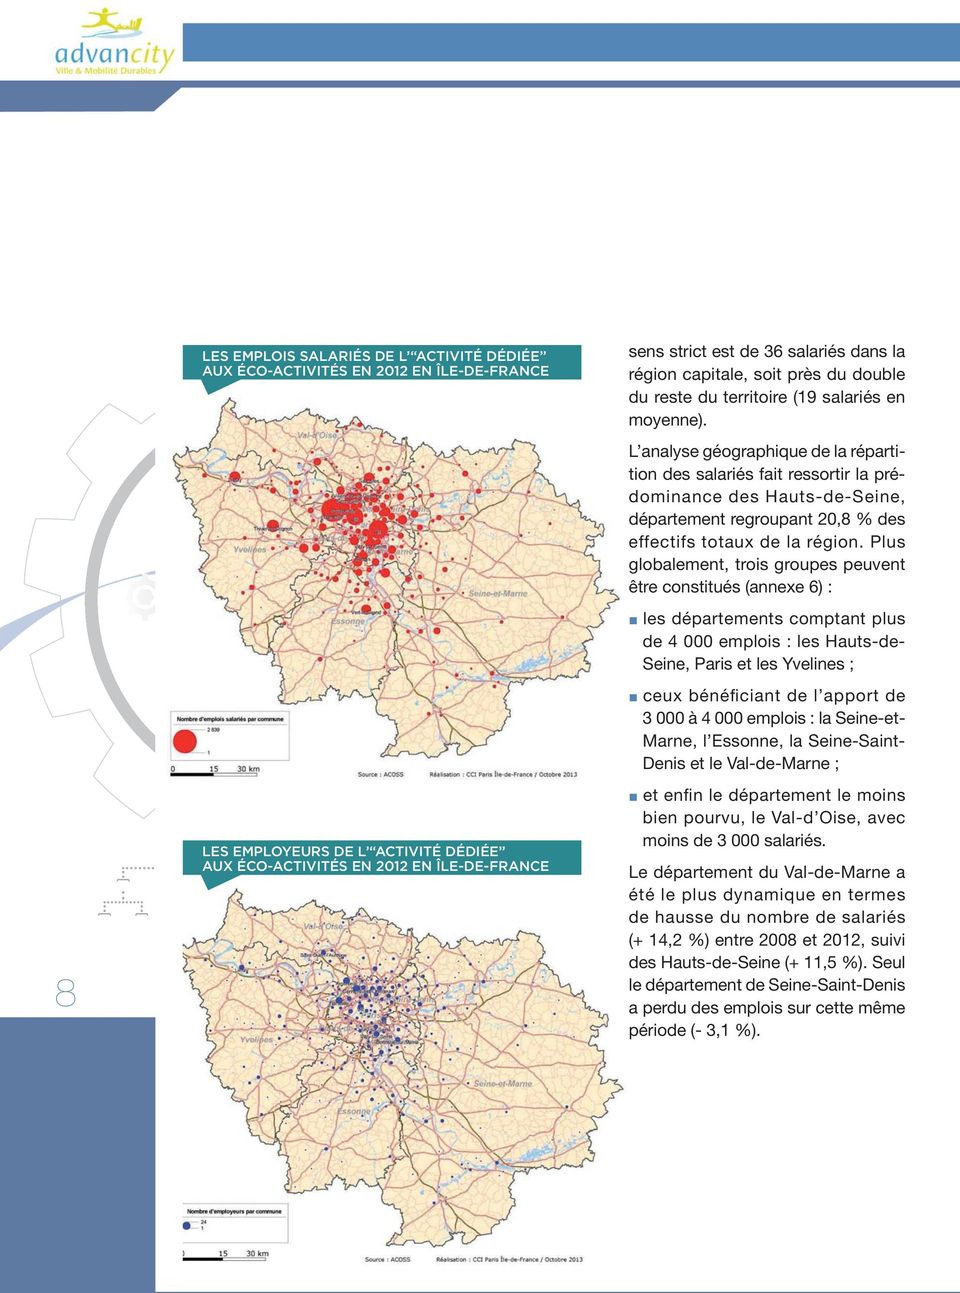 L analyse géographique de la répartition des salariés fait ressortir la prédominance des Hauts-de-Seine, département regroupant 20,8 % des effectifs totaux de la région.